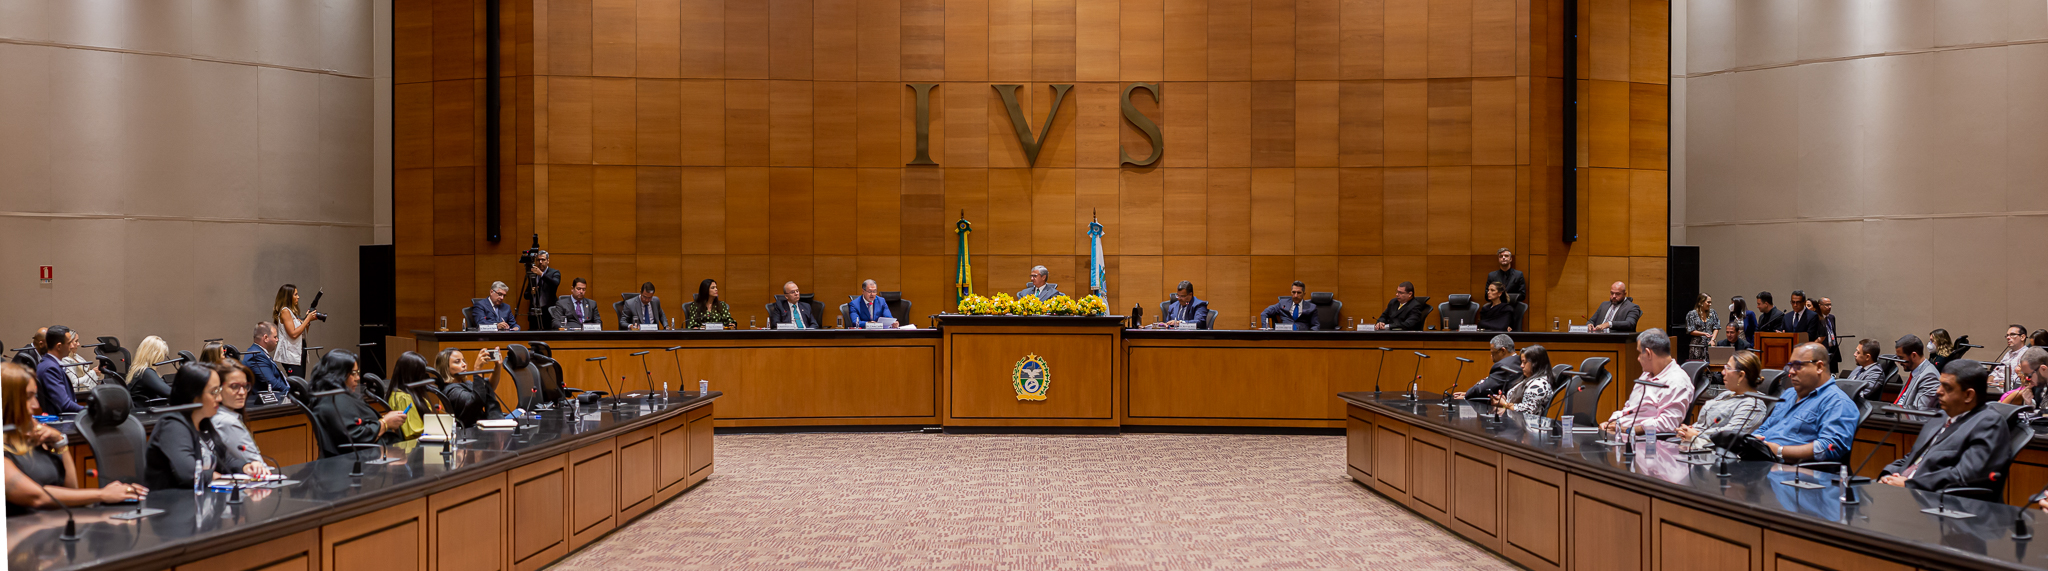 Imagem panorâmica do Tribunal Pleno durante cerimônia para assinatura de acordo de cooperação entre o TJRJ e o Procon-RJ